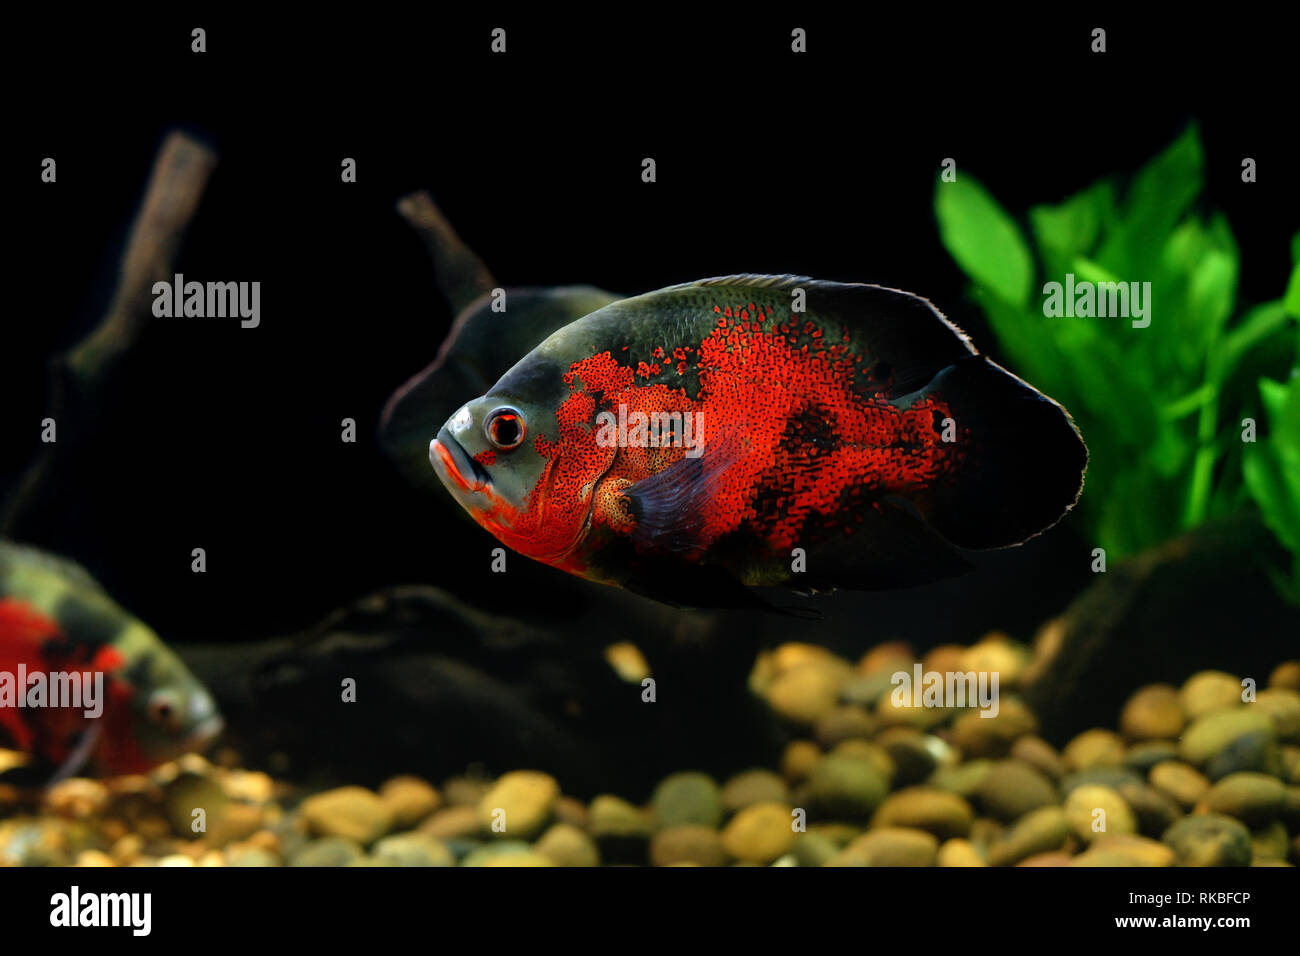 astronotus ocellatus or oscar fish in the aquarium Stock Photo